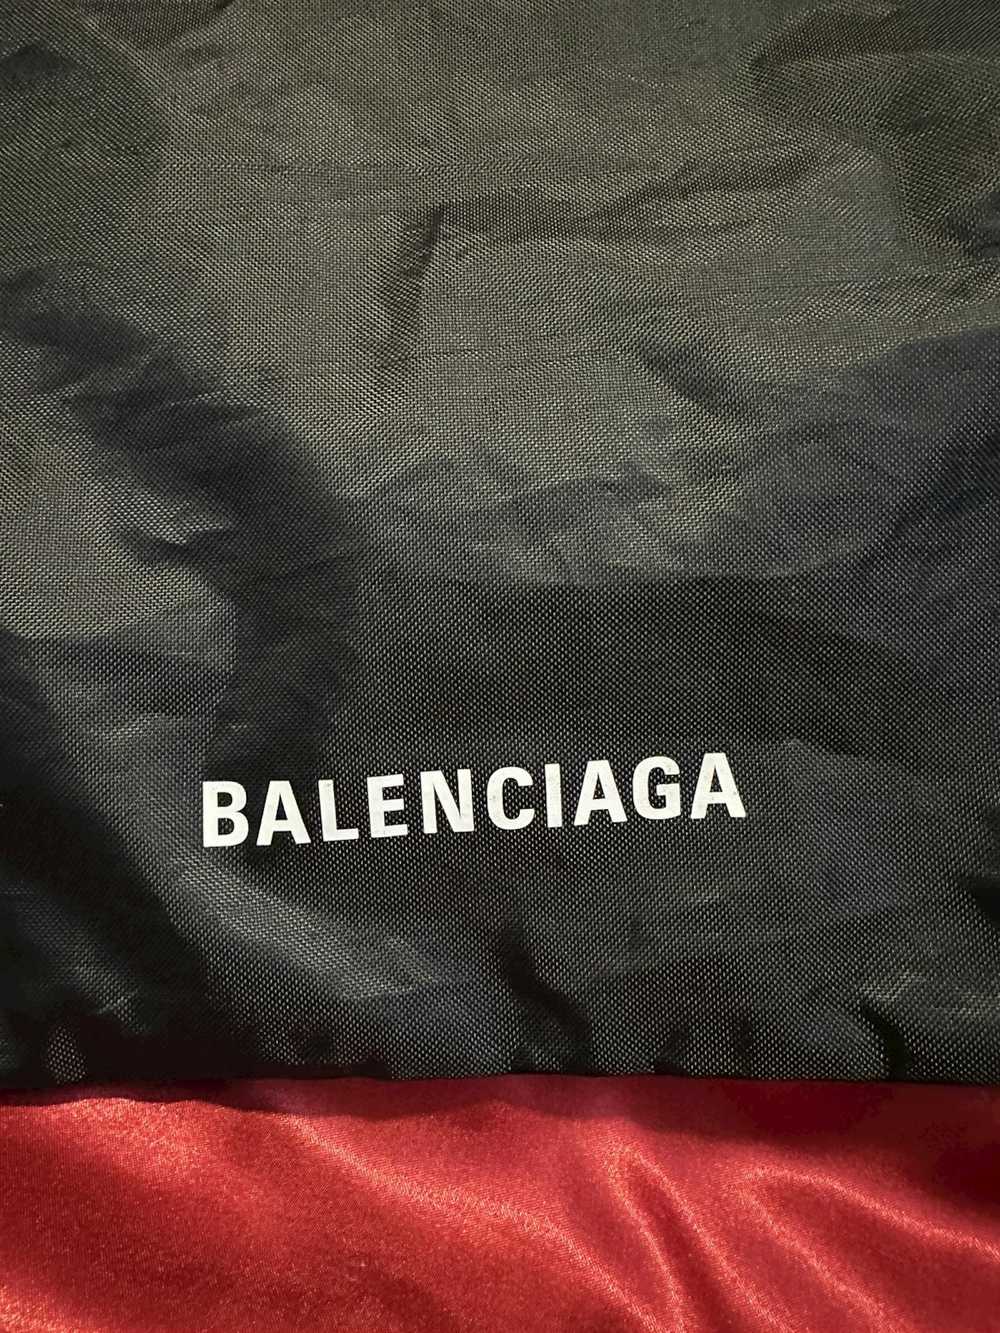 Balenciaga balenciaga drawstring bag - image 2